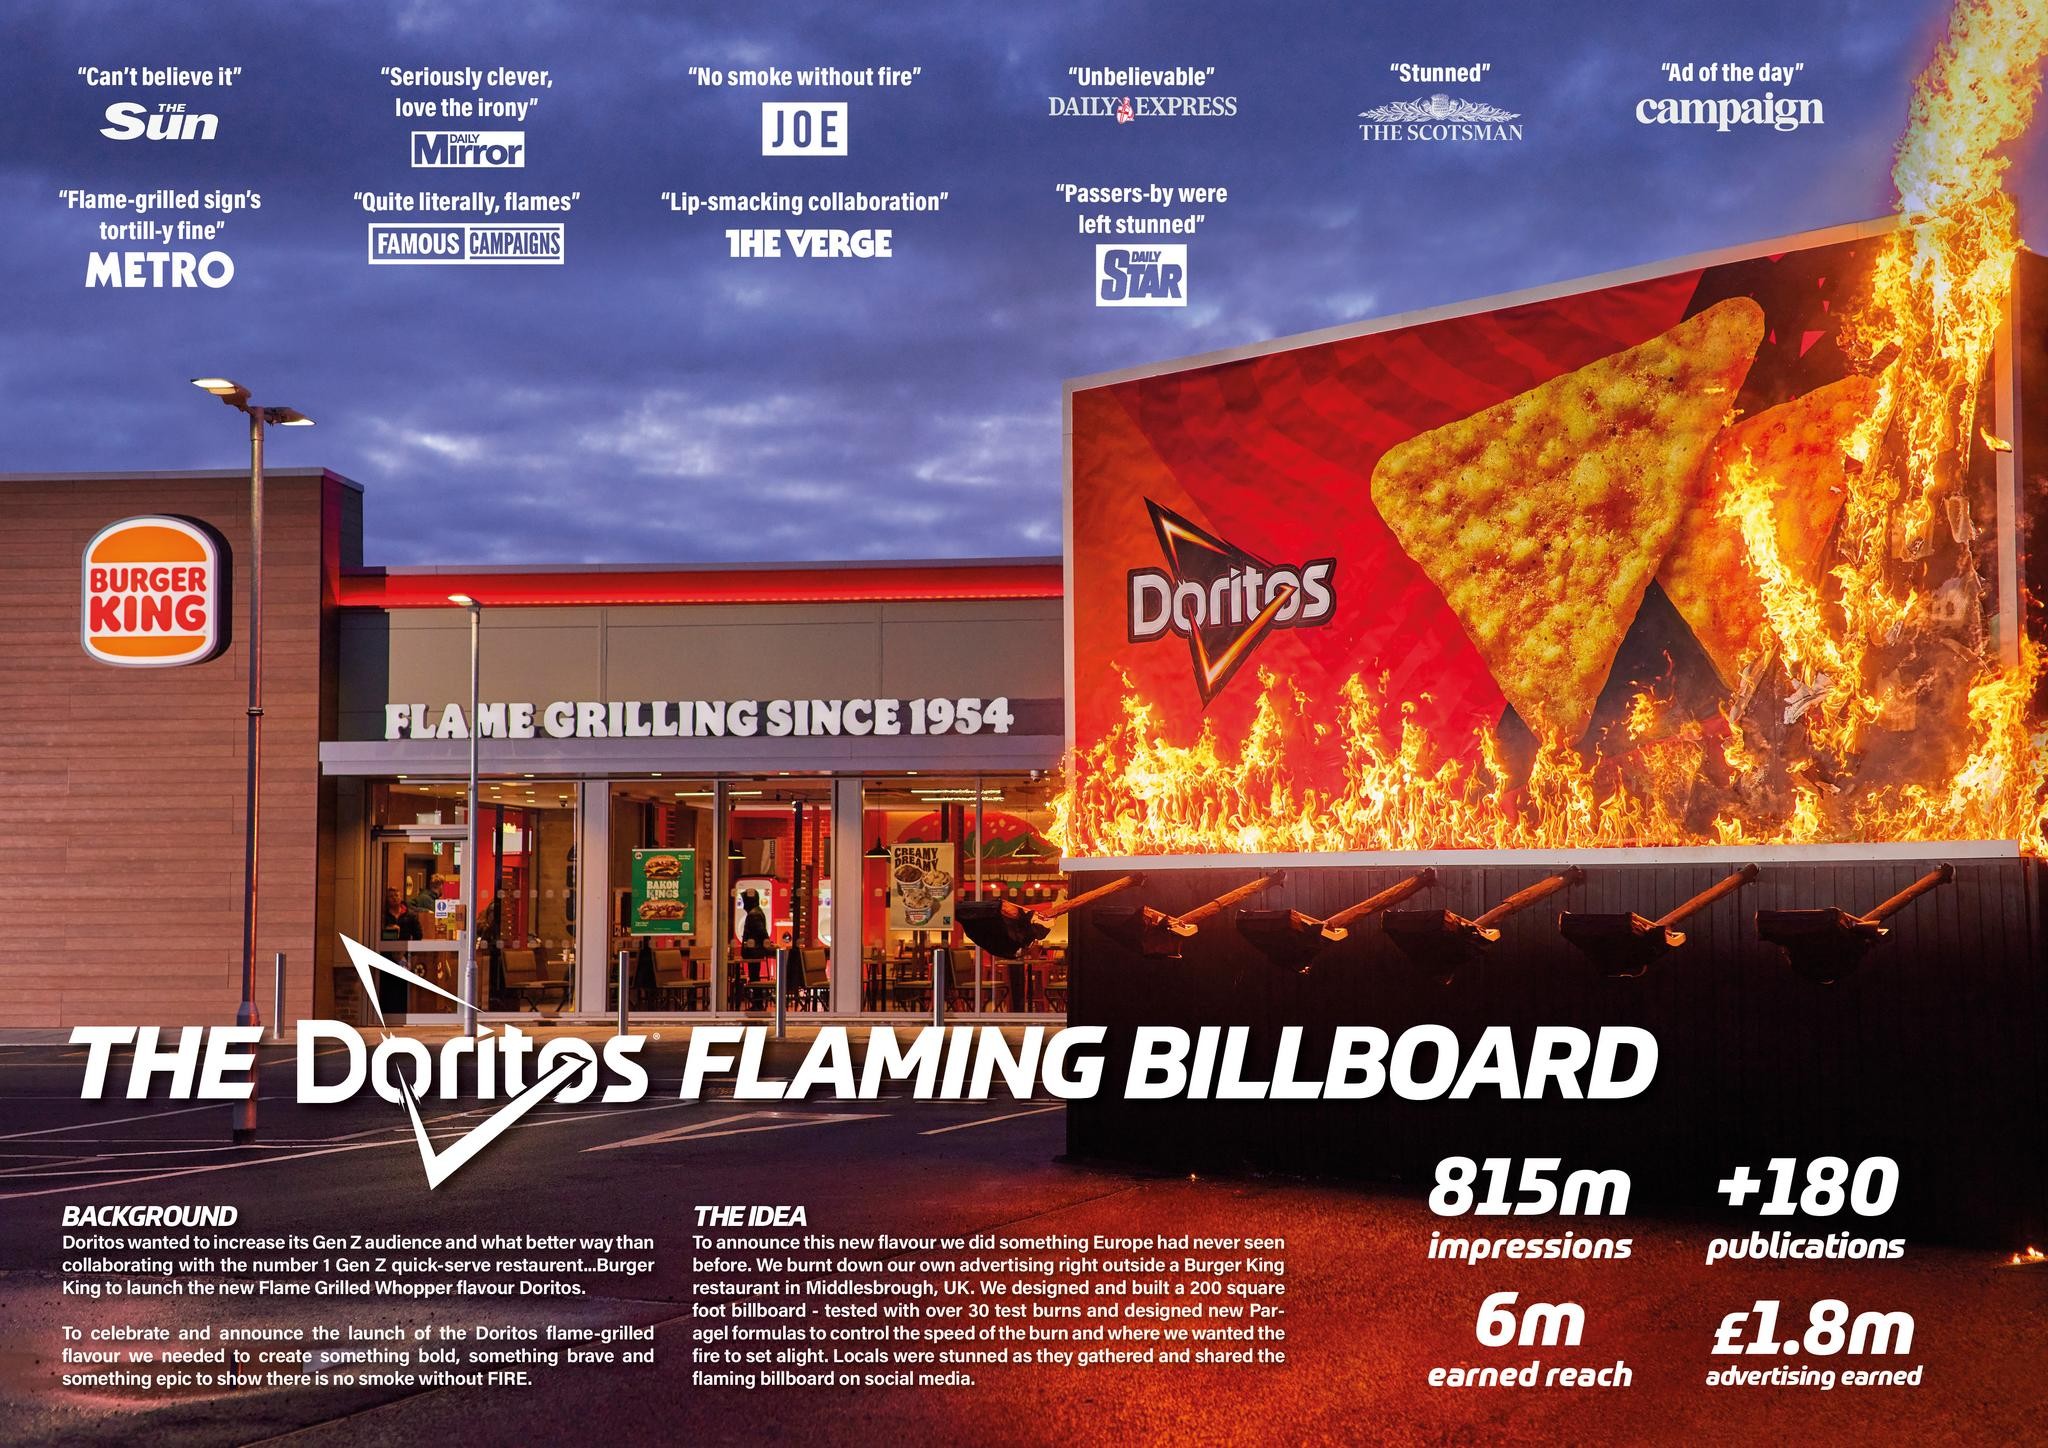 The Doritos Flaming Billboard